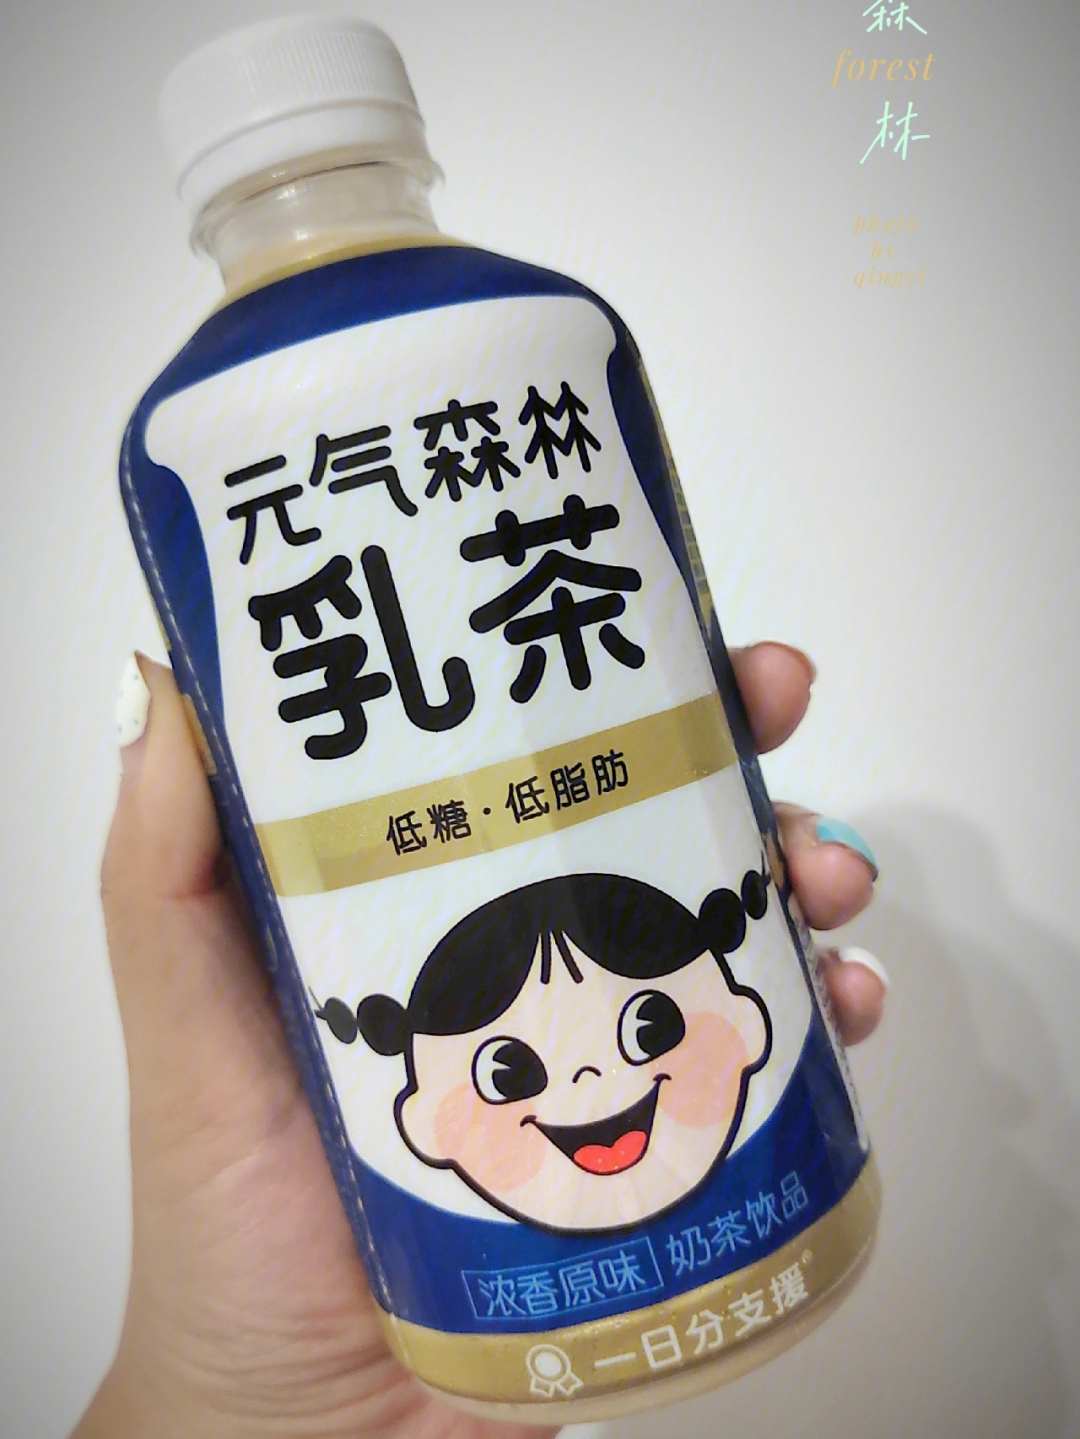 品名:元气森林乳茶(原味)